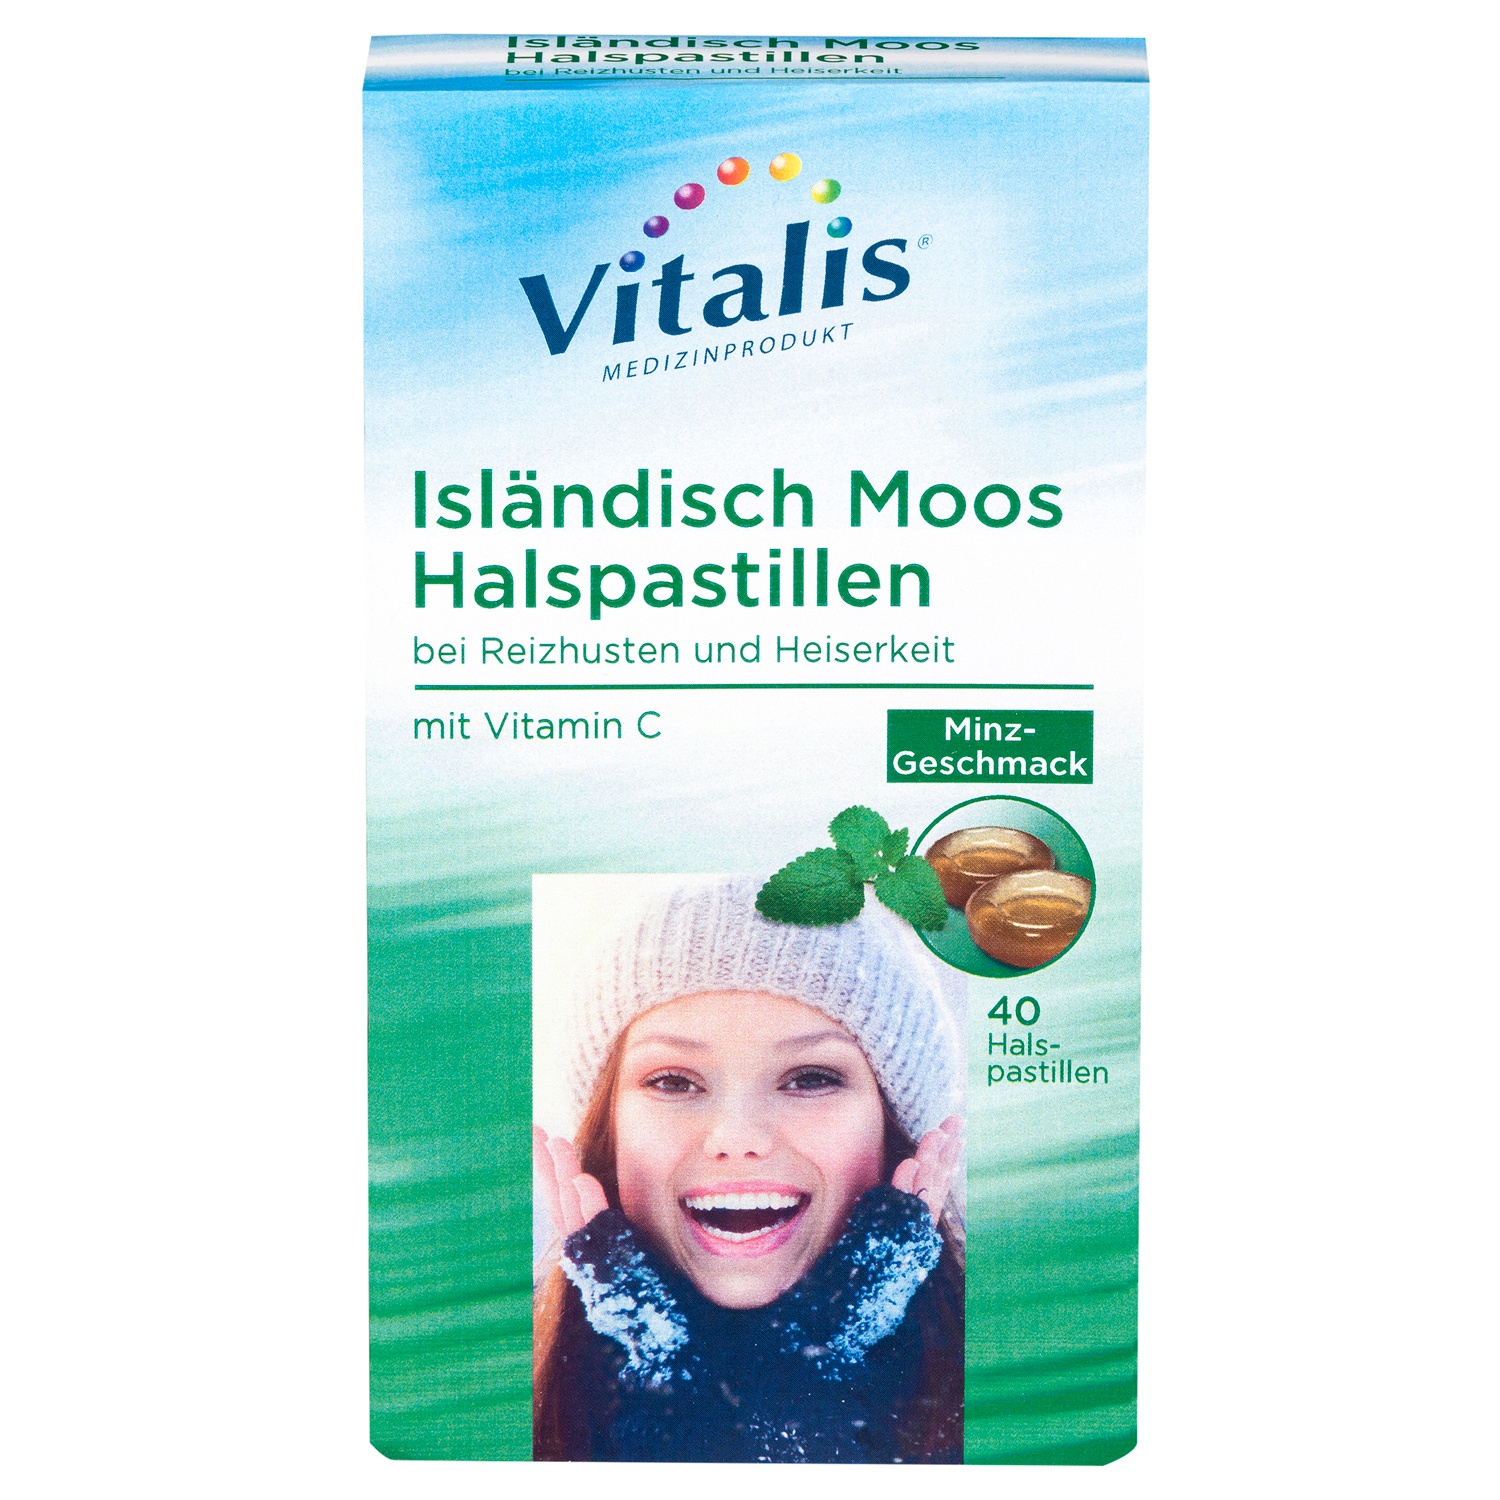 Vitalis® Isländisch Moos Halspastillen